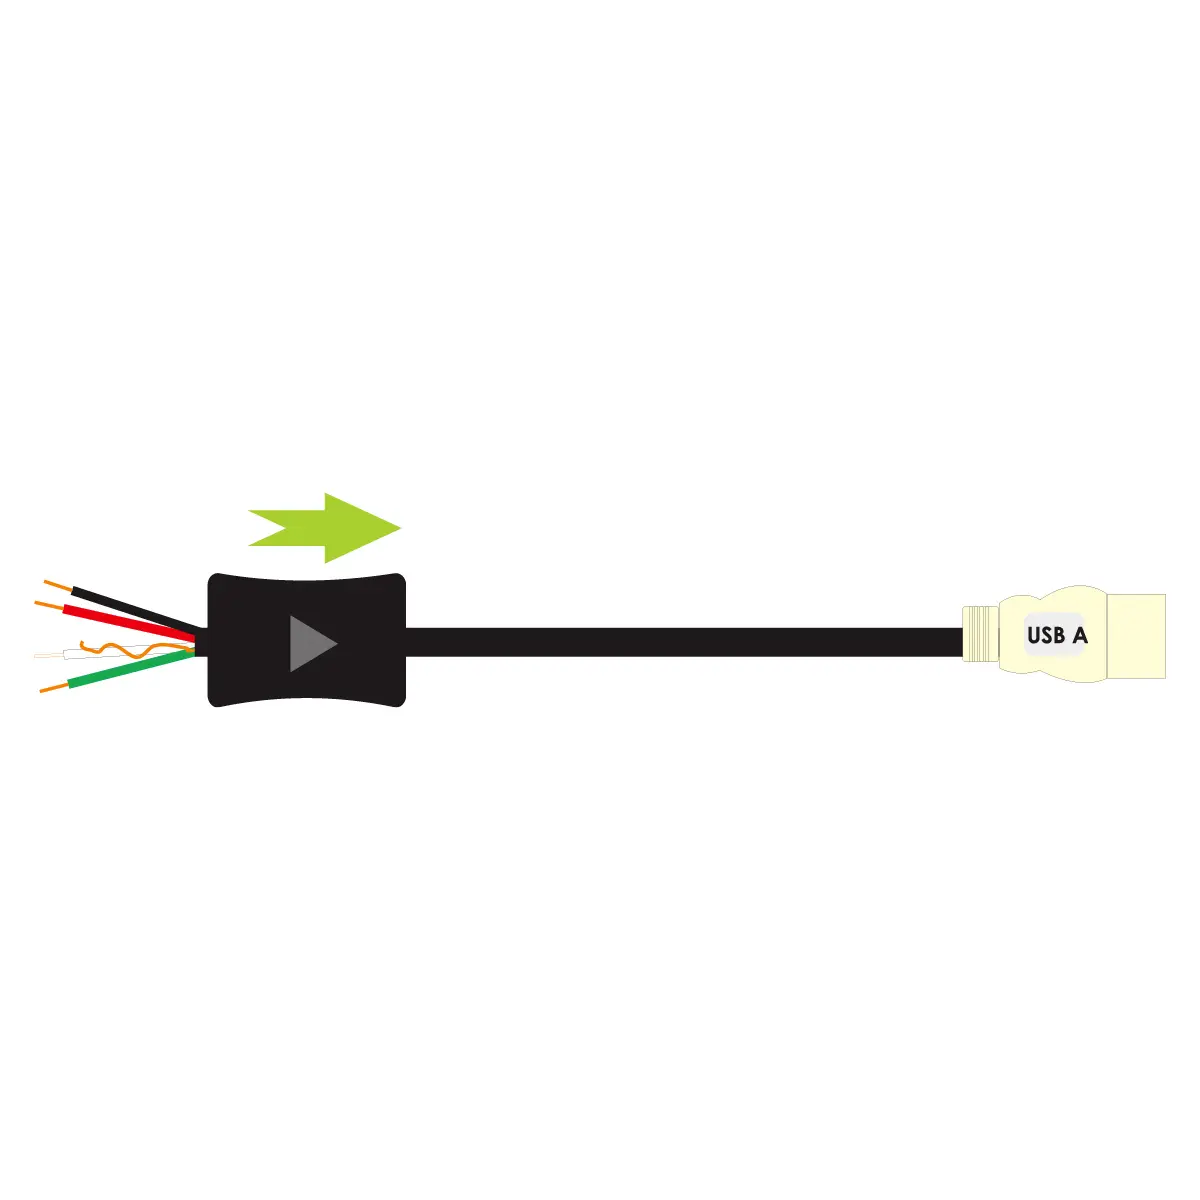 Demi cordon équipé d'une fiche USB2 A mâle avec amplification vers embouts sertis numérotés : 5m